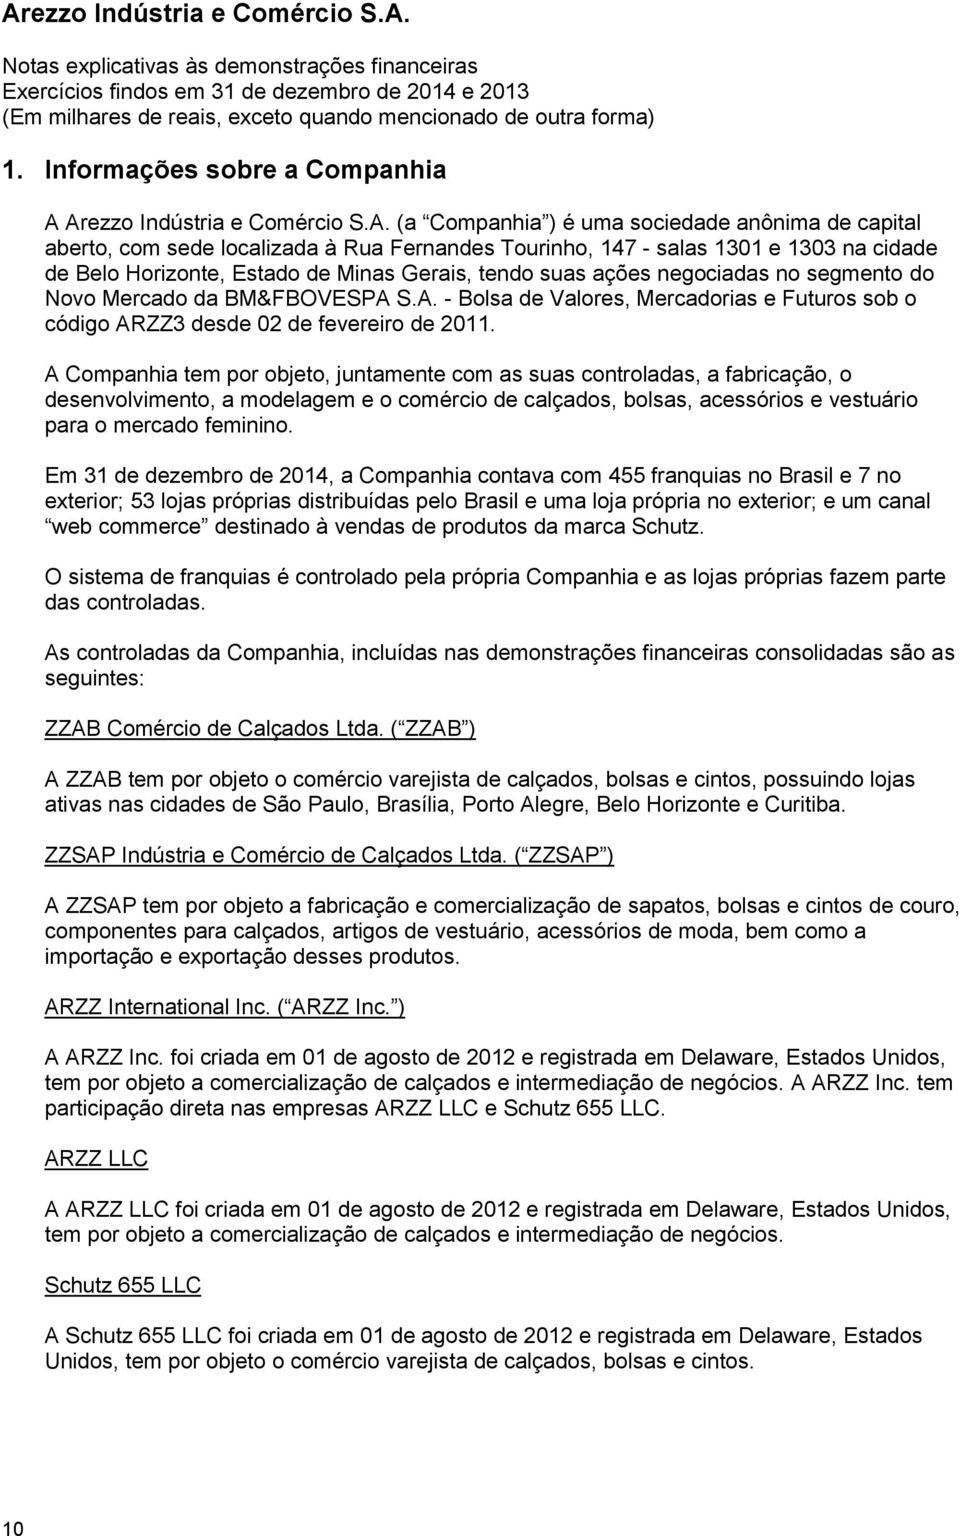 Minas Gerais, tendo suas ações negociadas no segmento do Novo Mercado da BM&FBOVESPA S.A. - Bolsa de Valores, Mercadorias e Futuros sob o código ARZZ3 desde 02 de fevereiro de 2011.